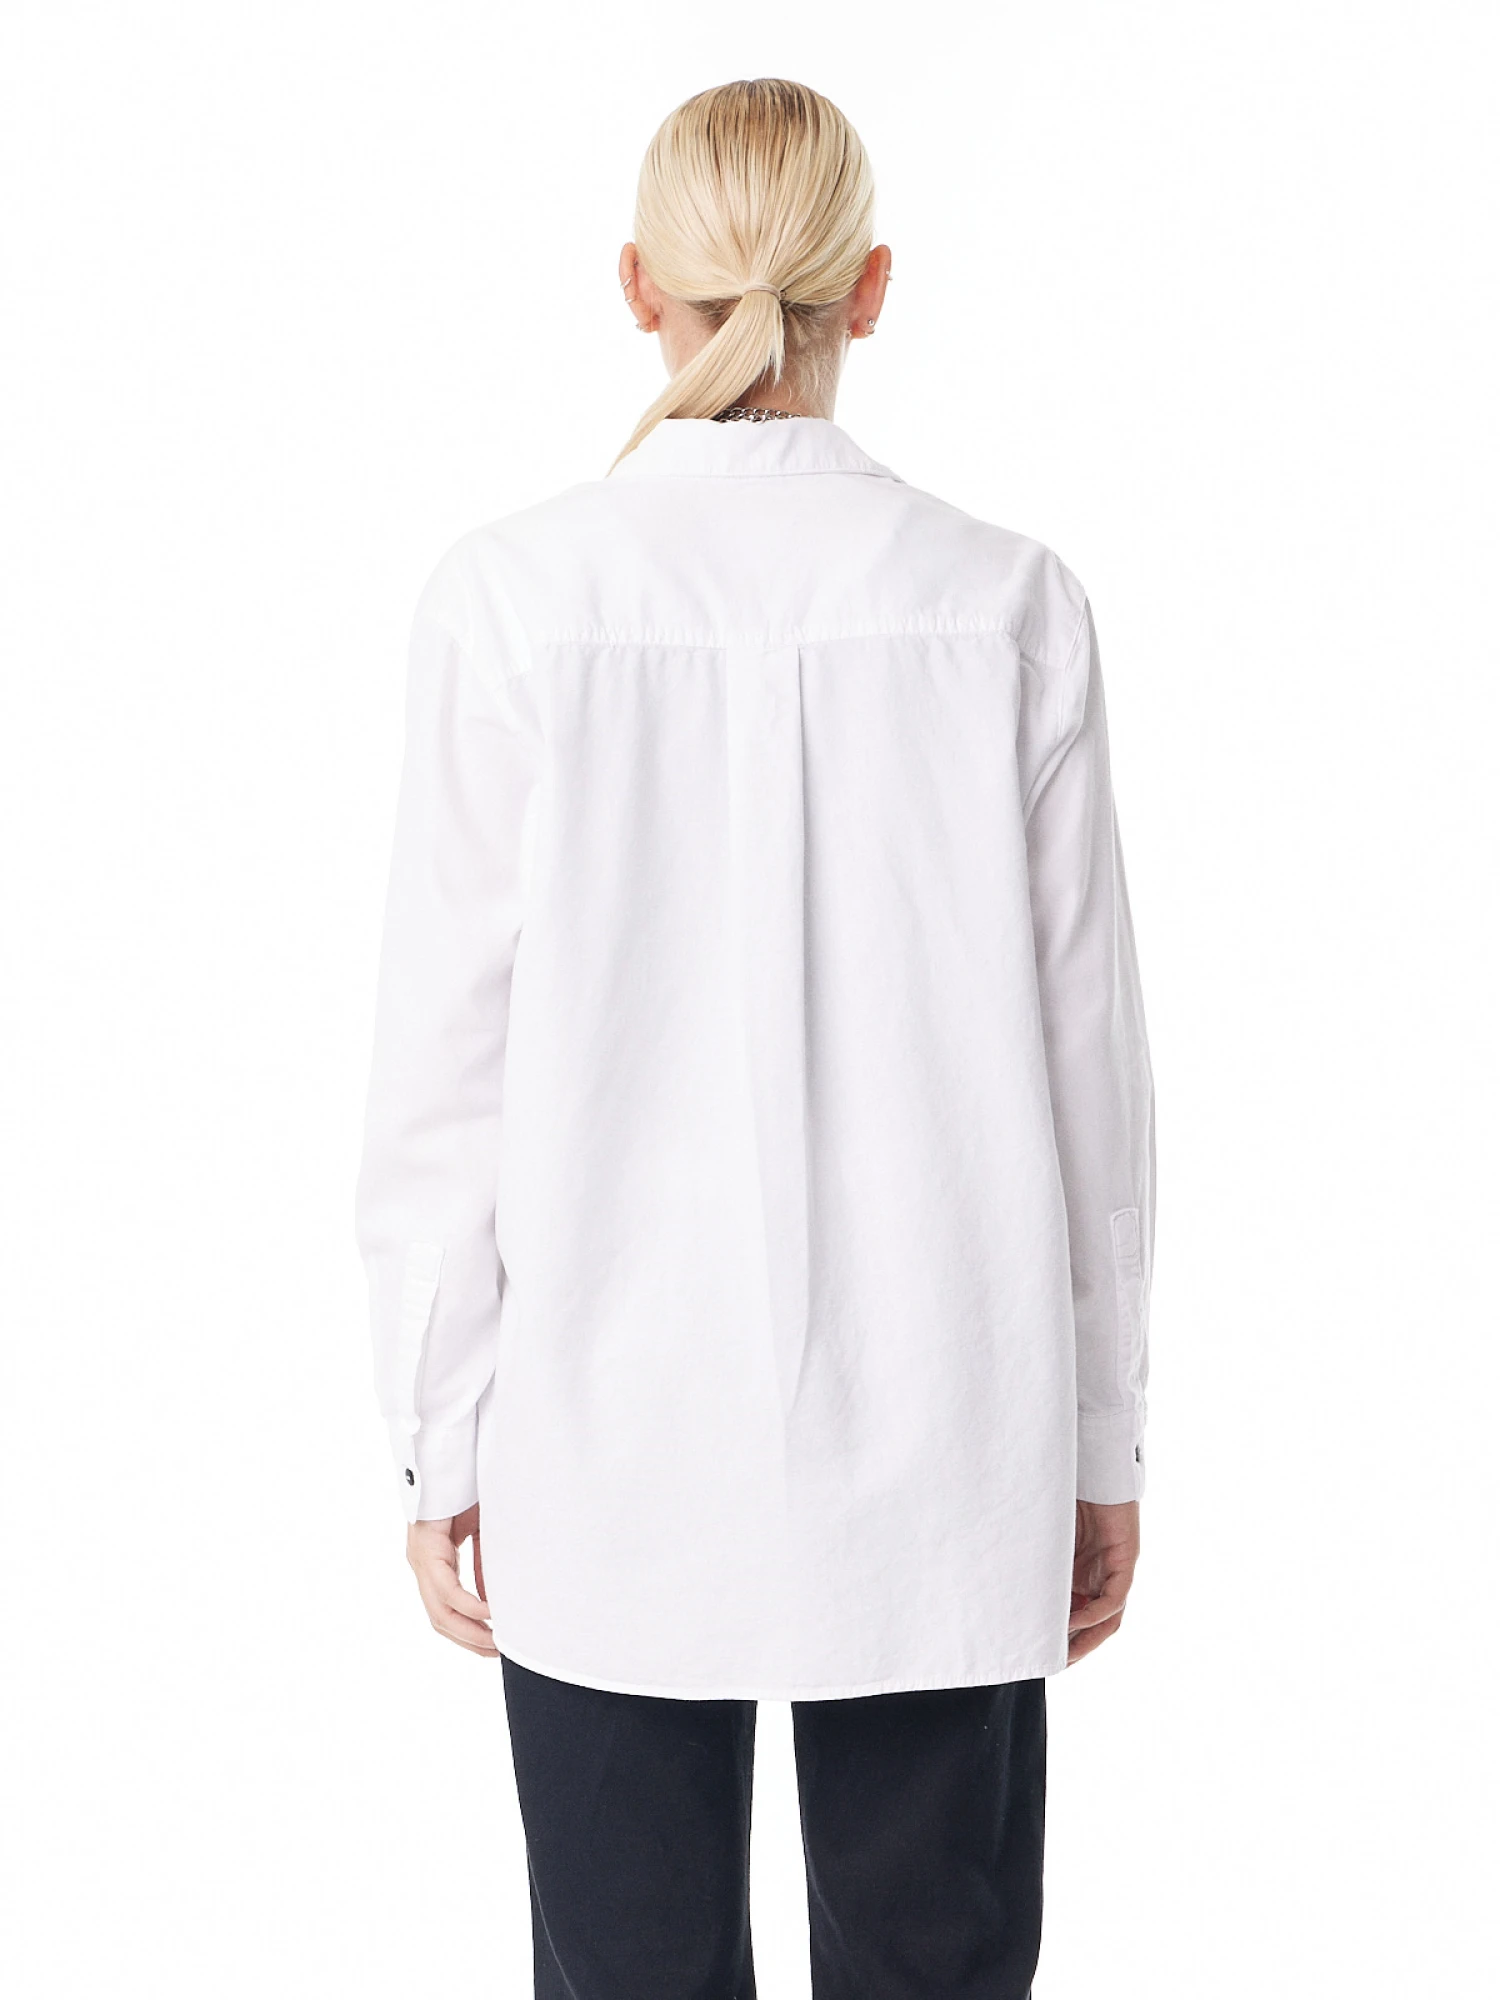 Camisa Noble Oxford blanco s